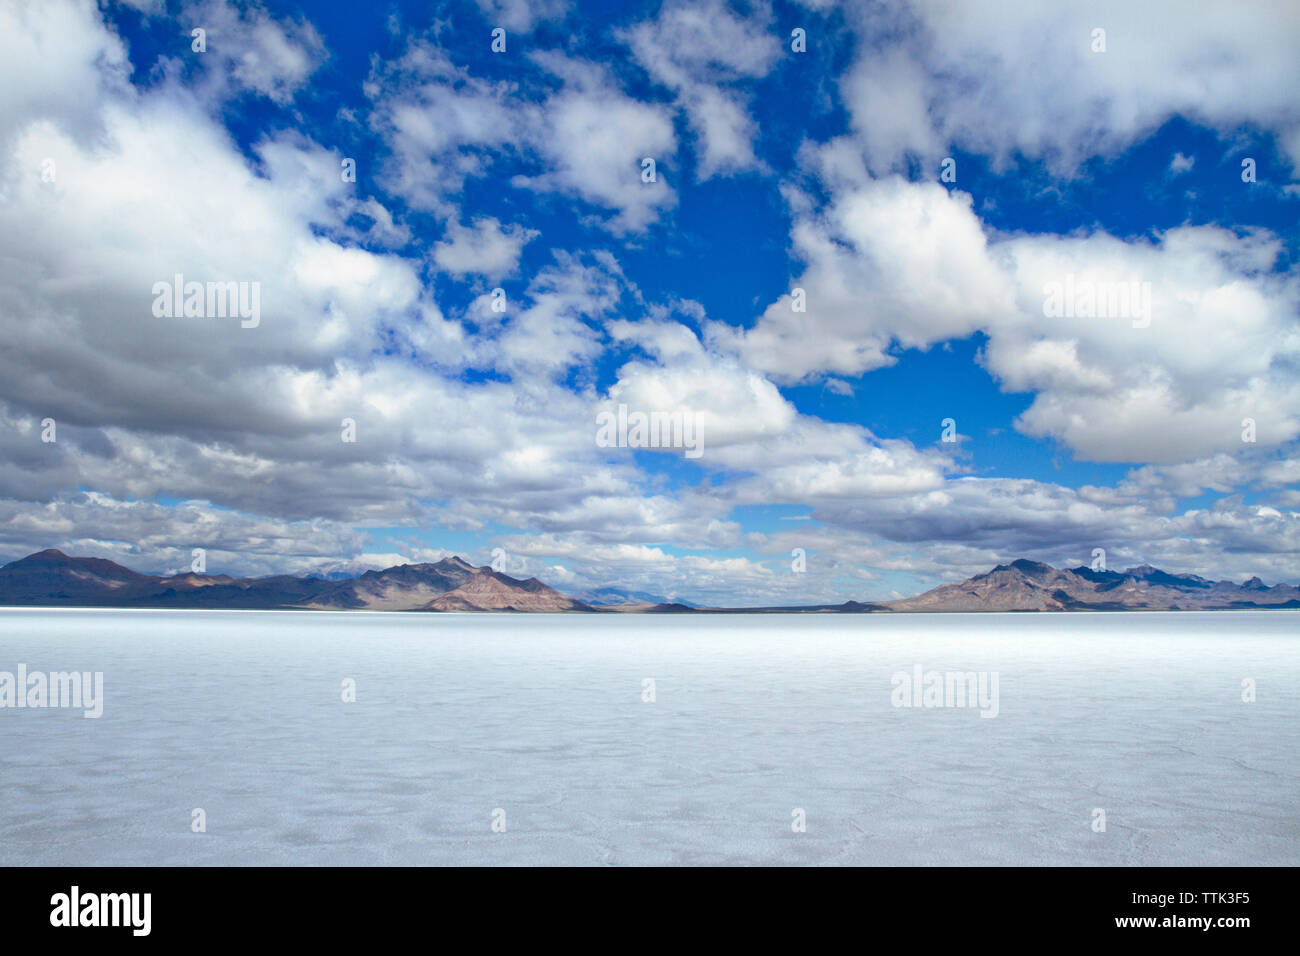 Vista panoramica del campo nevoso contro il cielo nuvoloso Foto Stock